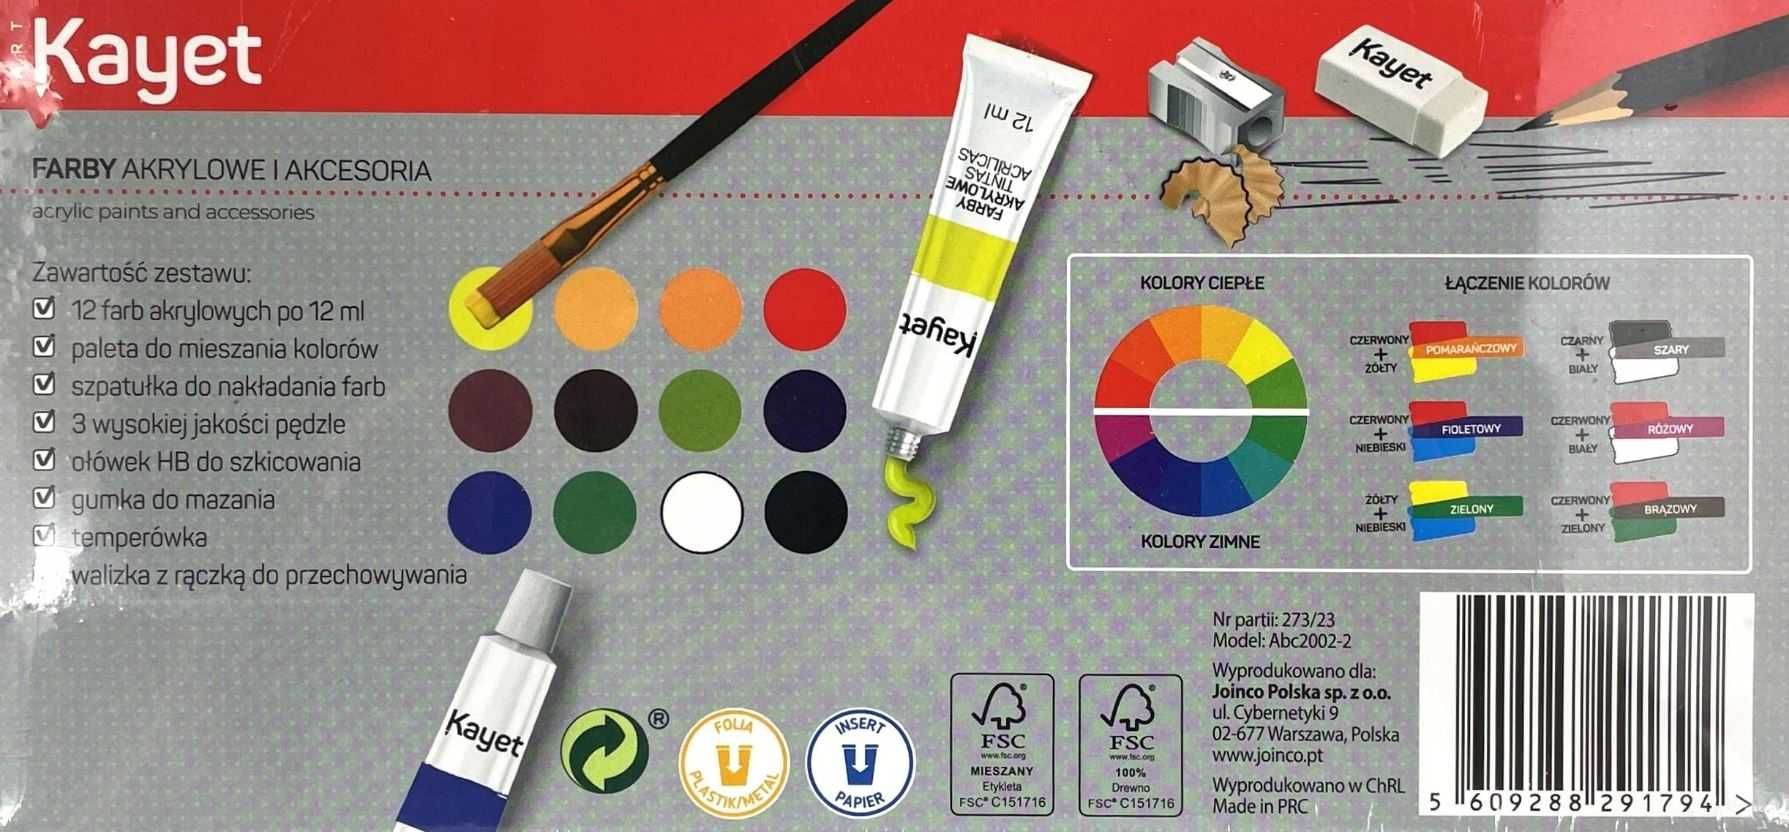 Zestaw do malowania Farby akrylowych 12x12ml + dodatki w pudełku